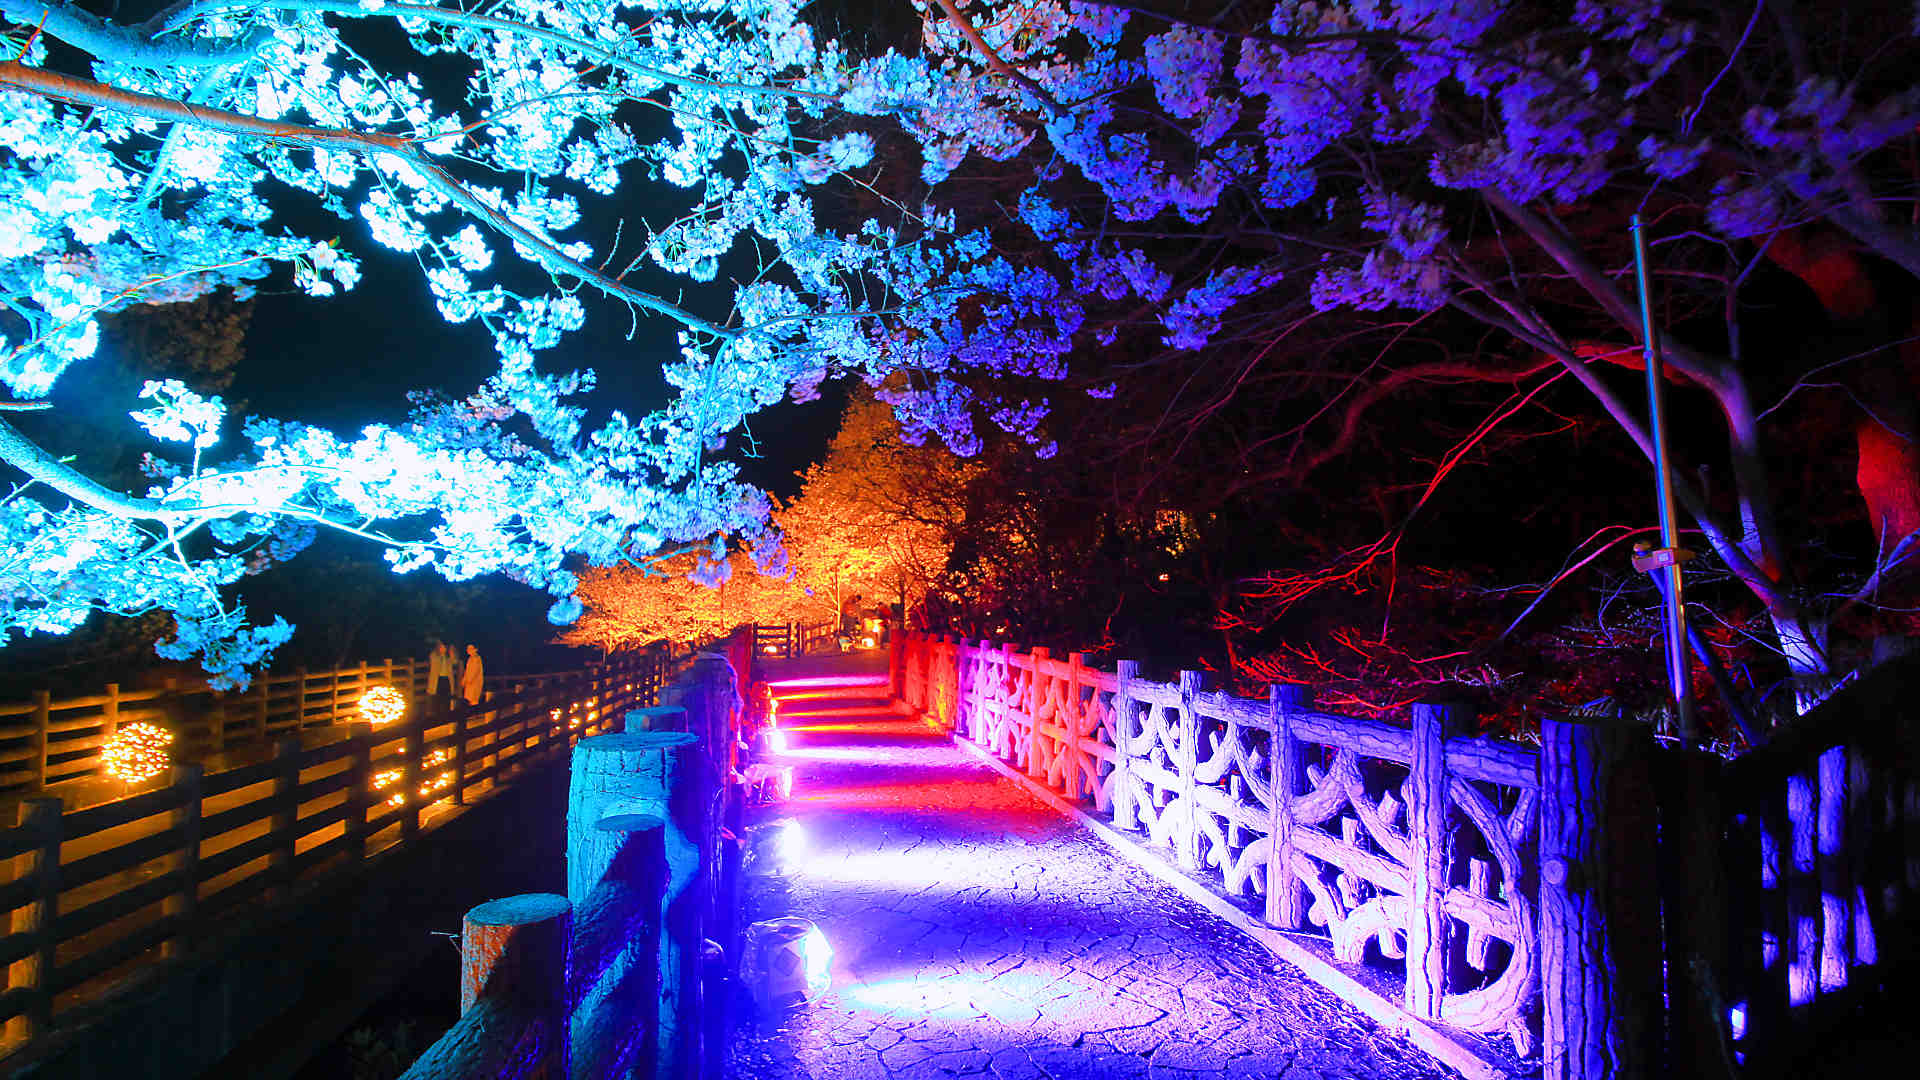 須磨浦公園夜桜のライトアップ 敦盛桜2018 敦盛桜花灯り